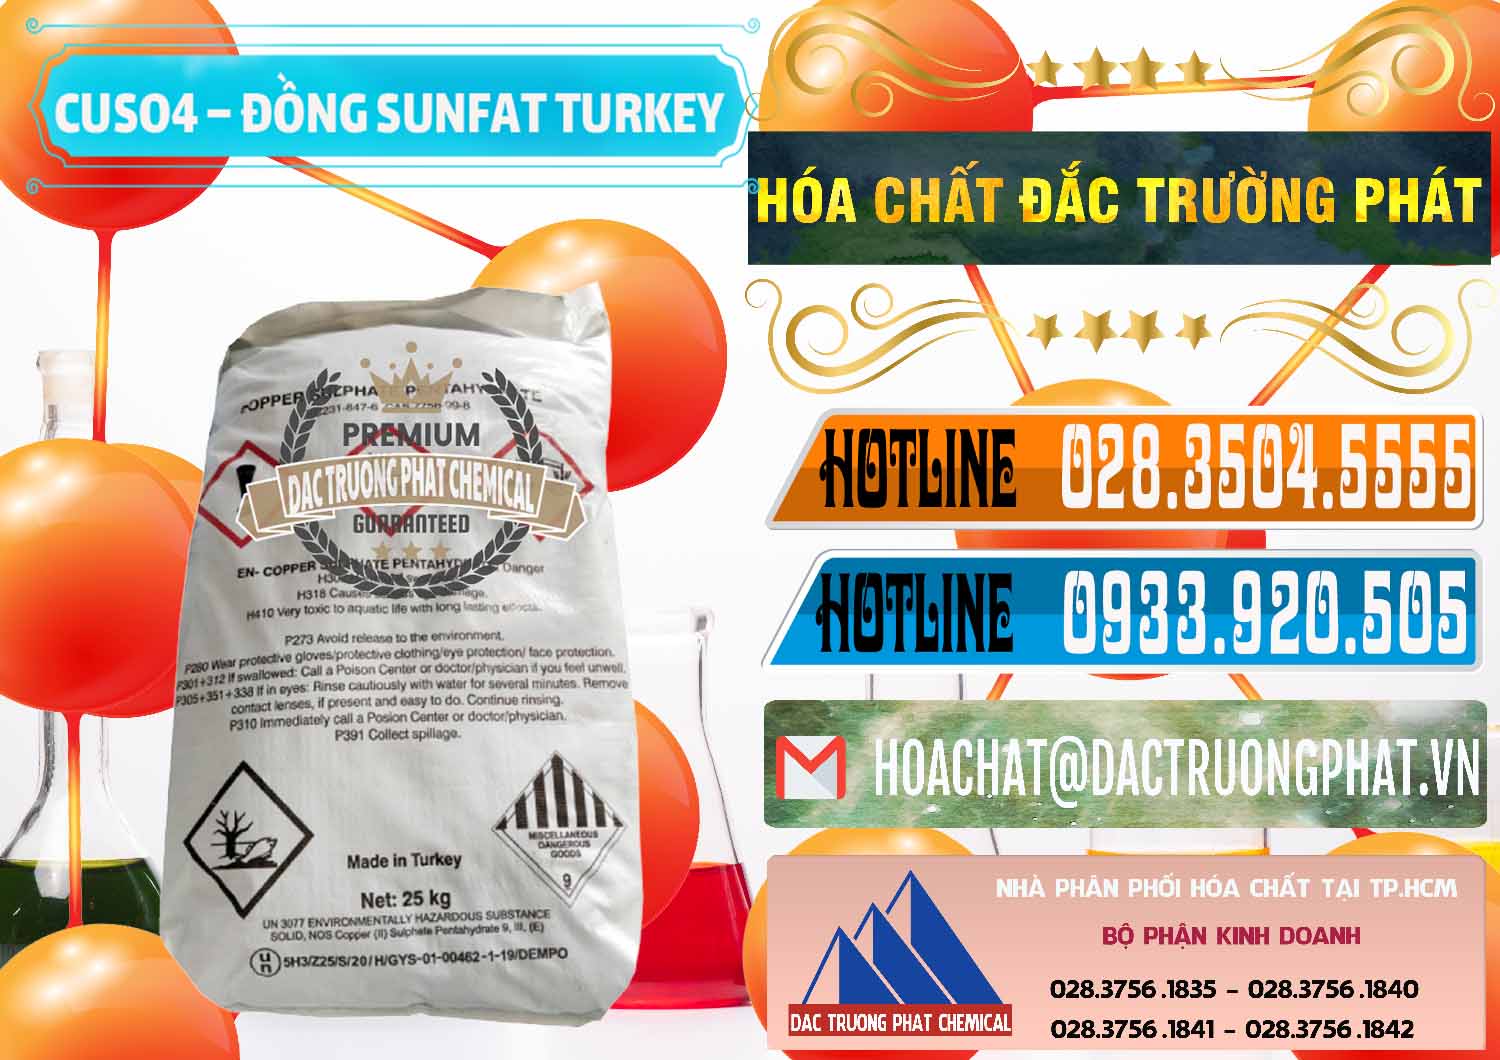 Đơn vị chuyên bán - cung cấp CuSO4 – Đồng Sunfat Thổ Nhĩ Kỳ Turkey - 0481 - Nơi phân phối - bán hóa chất tại TP.HCM - stmp.net